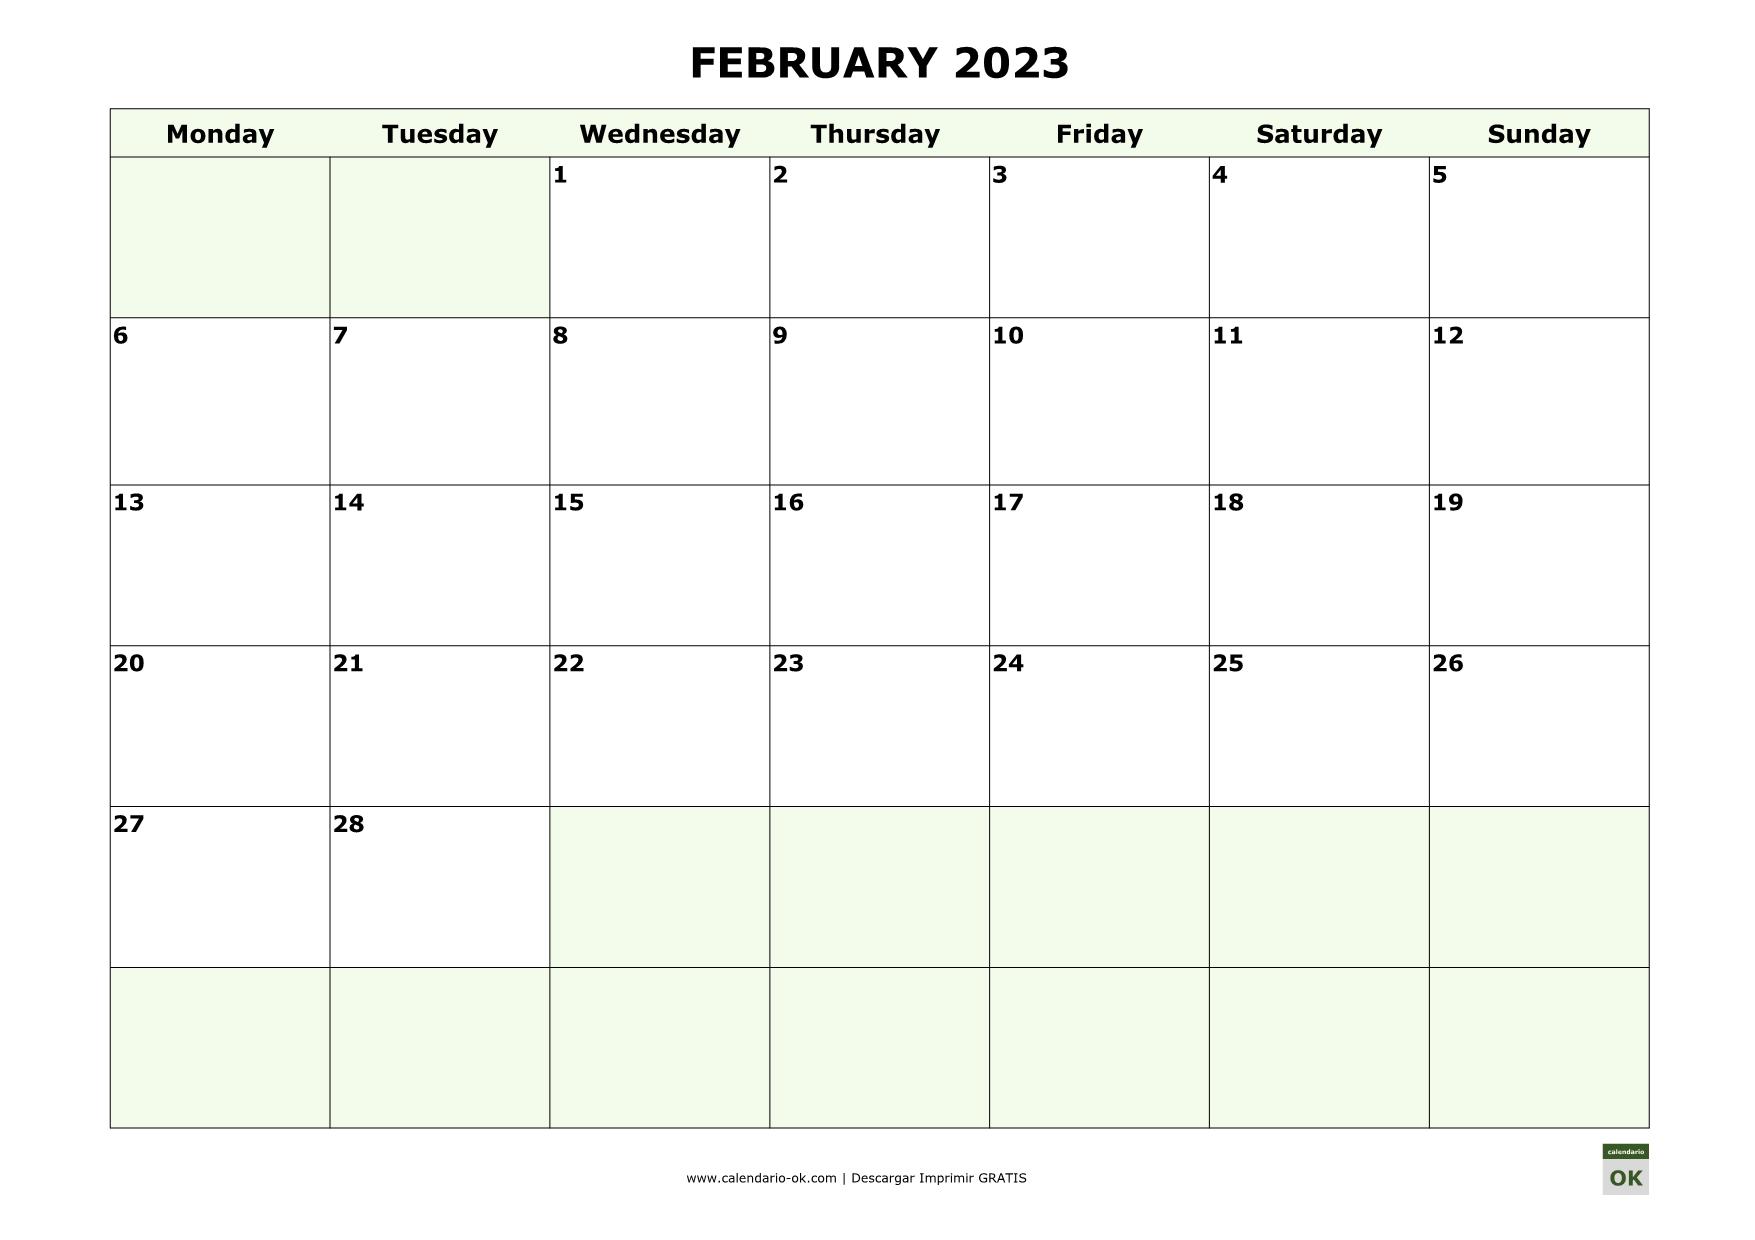 FEBRERO 2023 calendario en INGLES